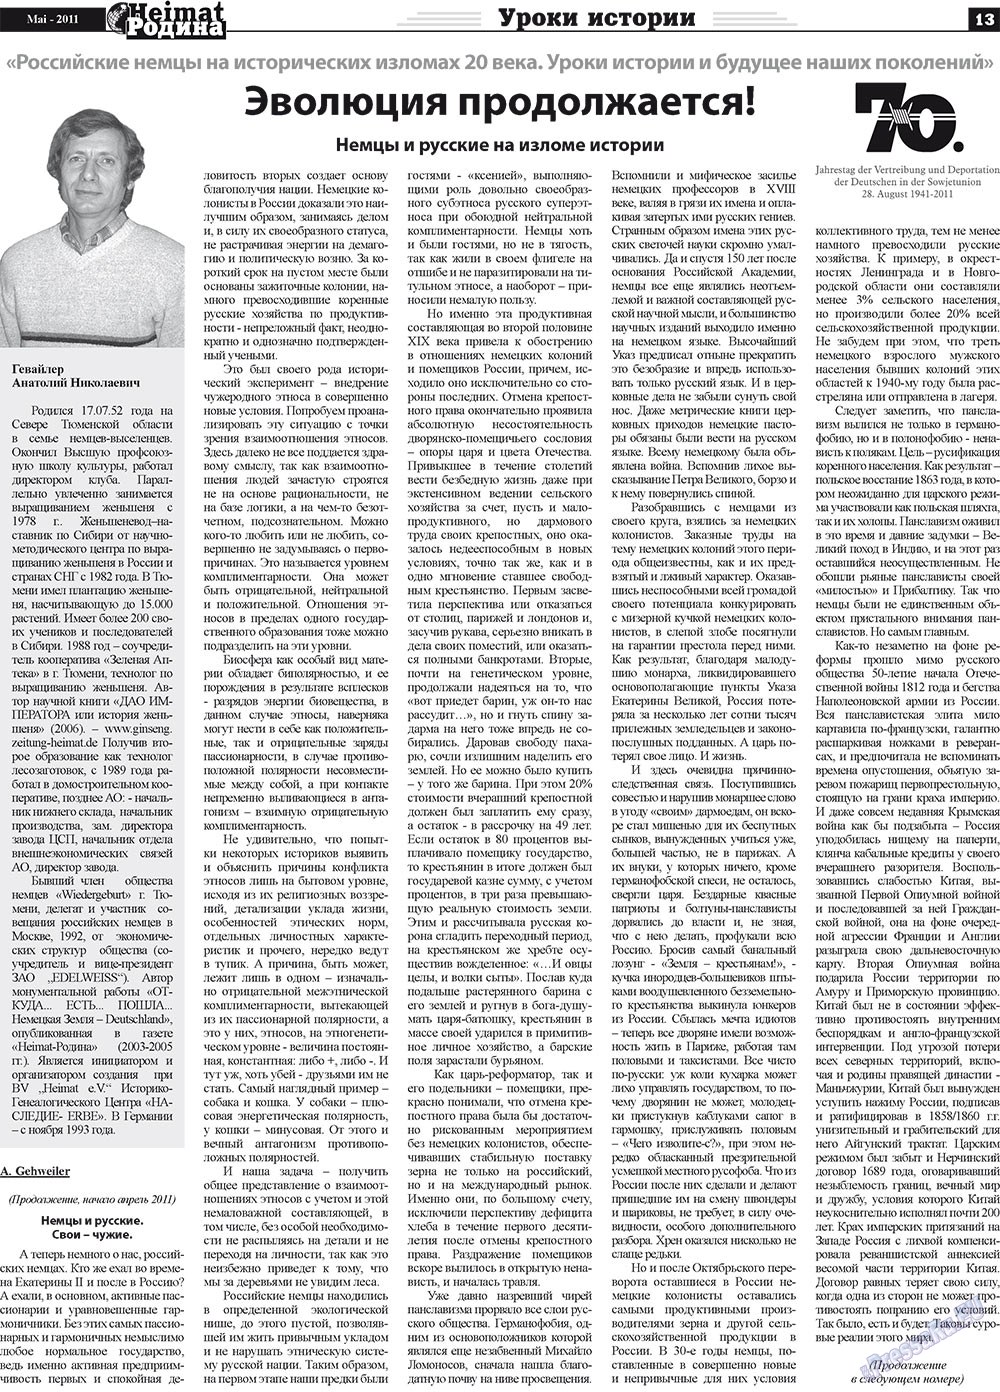 Heimat-Родина (газета). 2011 год, номер 5, стр. 13